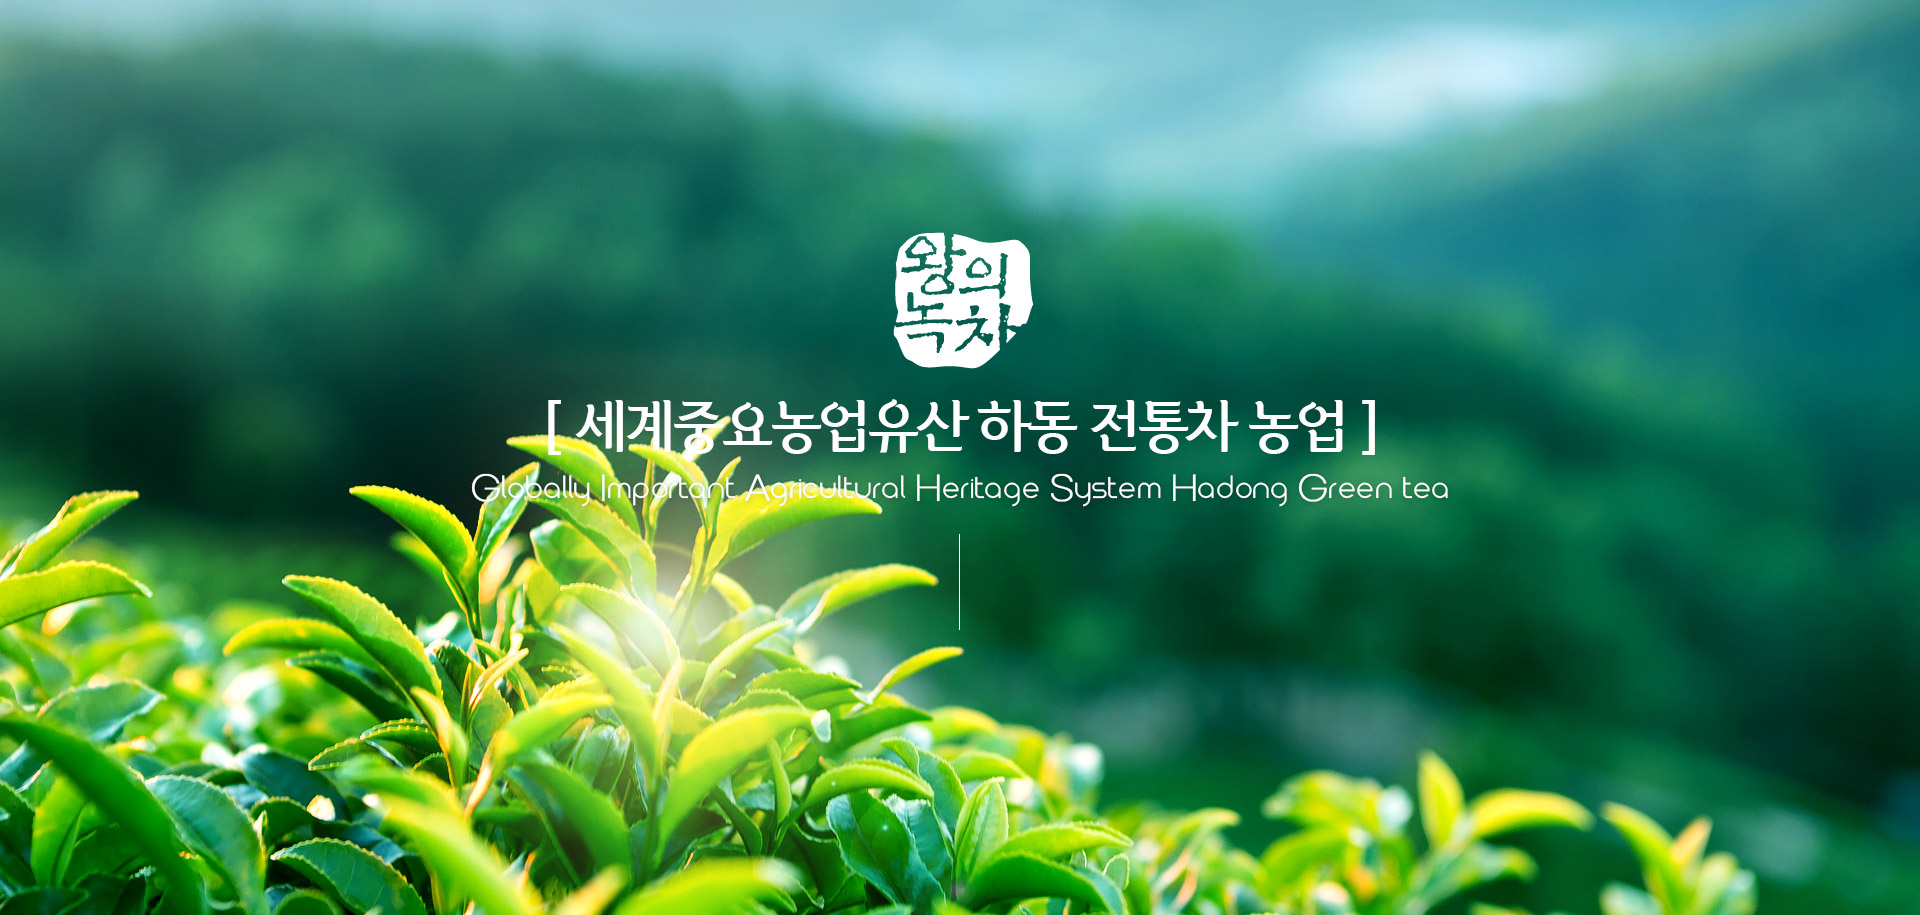 [ 세계중요농업유산 하동 전통차 농업 ] Globally Important Agricultural Heritage System Hadong Green Tea